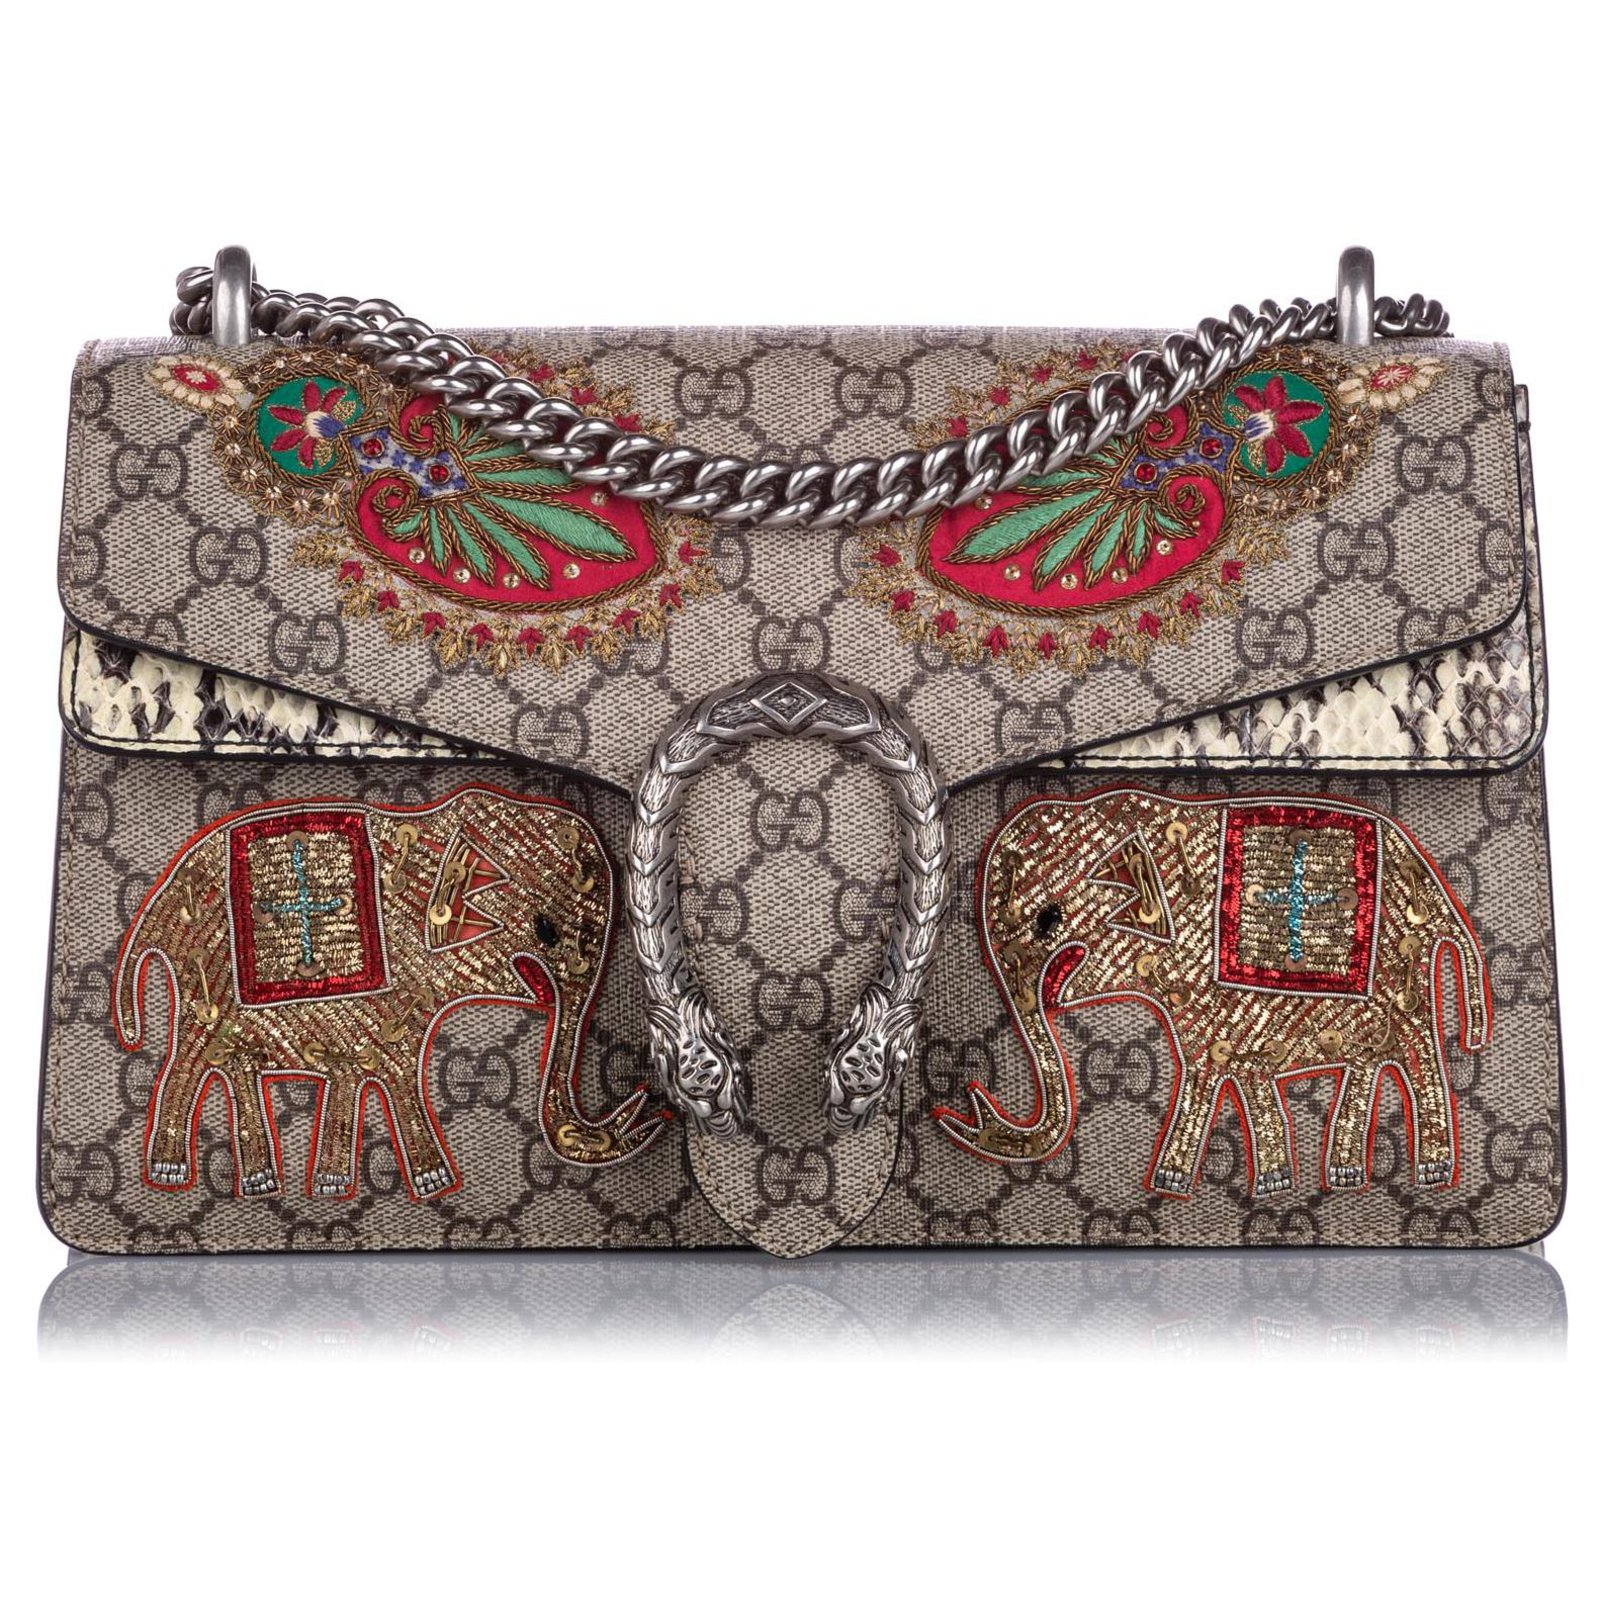 Gucci Dionysus Gg Supreme Elephant Shoulder Bag, $3,900, farfetch.com